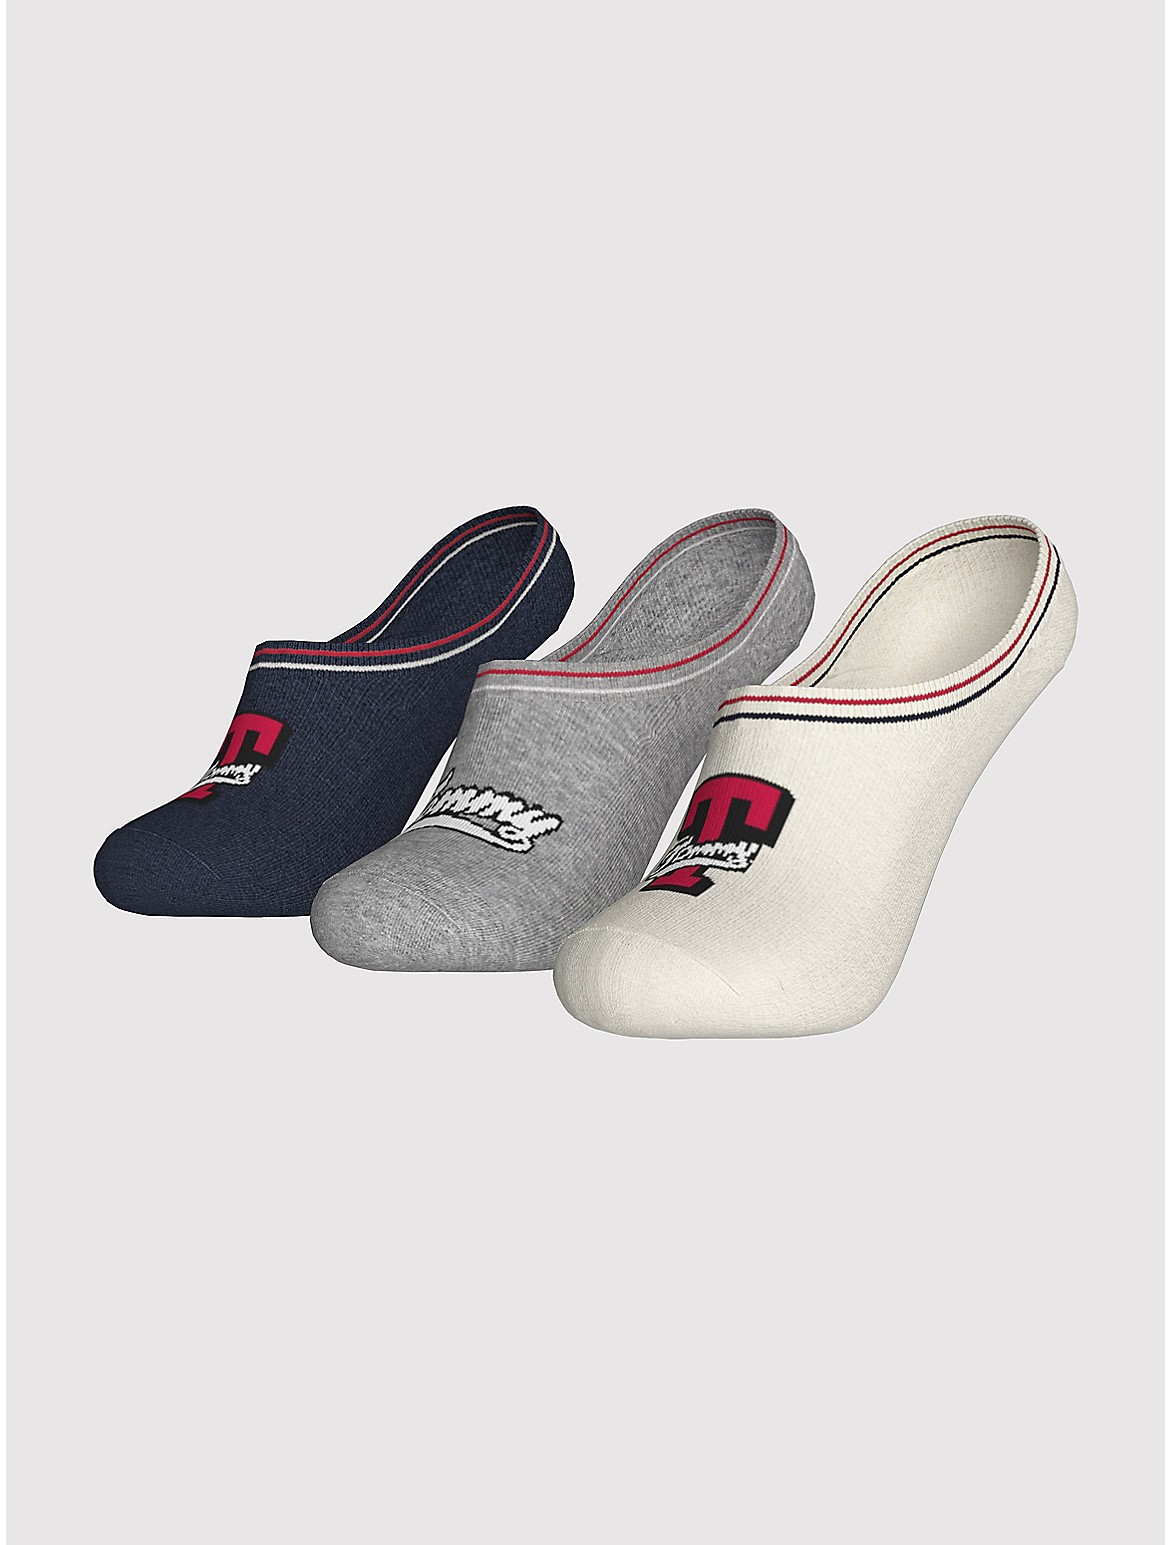 Tommy Hilfiger Girls' Kids' Liner Sock 3-Pack - White - S